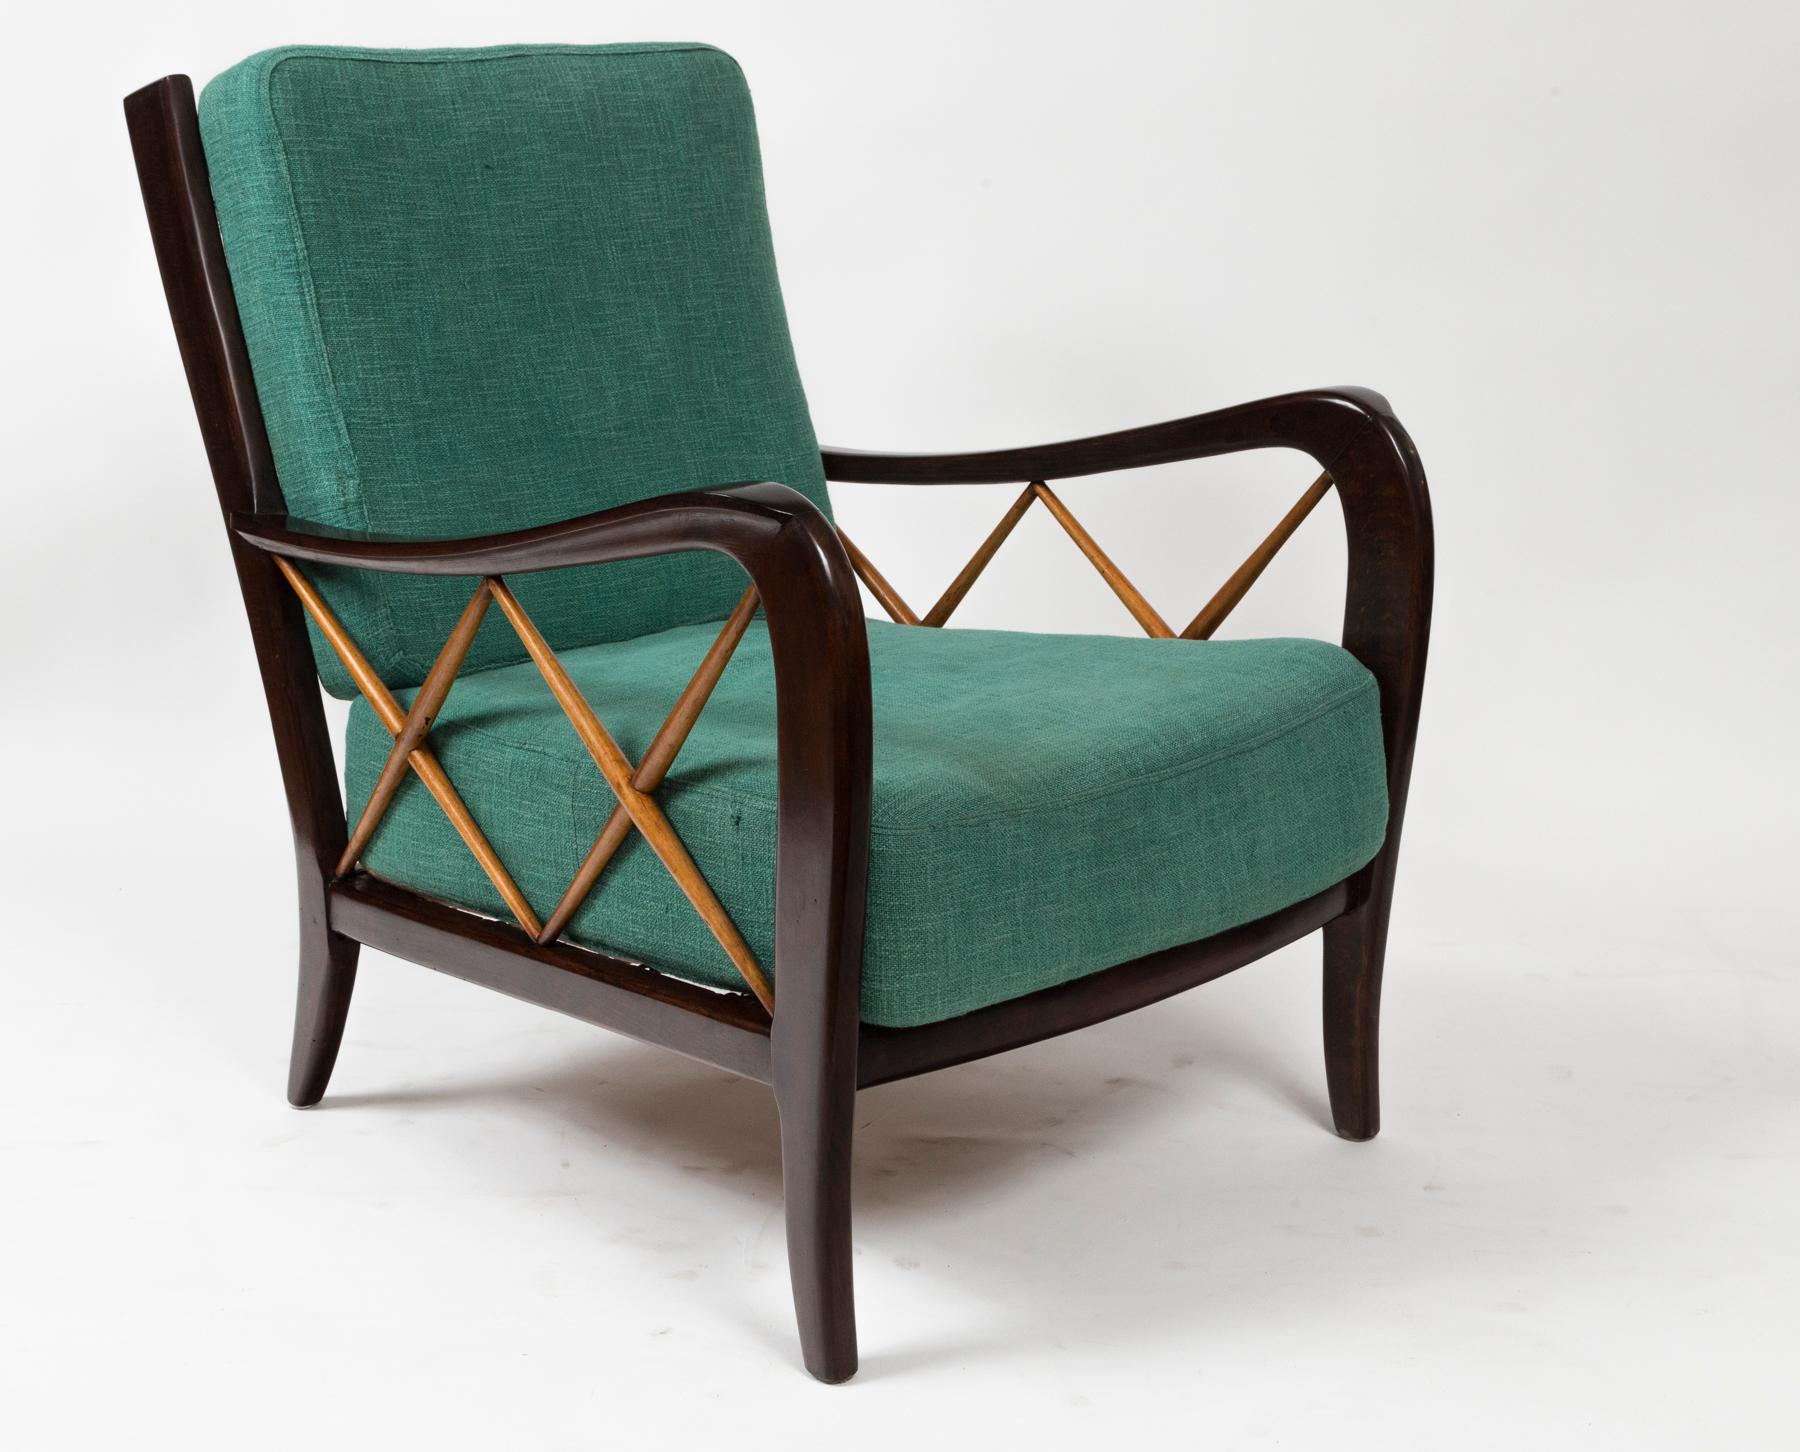 Ein hübsches Paar geschwungener Armlehnstühle im Vintage-Stil, insgesamt aus braunem, schellackpoliertem Buchenholz. Die Latten an der Rückenlehne der Stühle und die Kreuze an den Seiten der Stühle sind aus Ahornholz, und die Sitzmöbel sind mit den